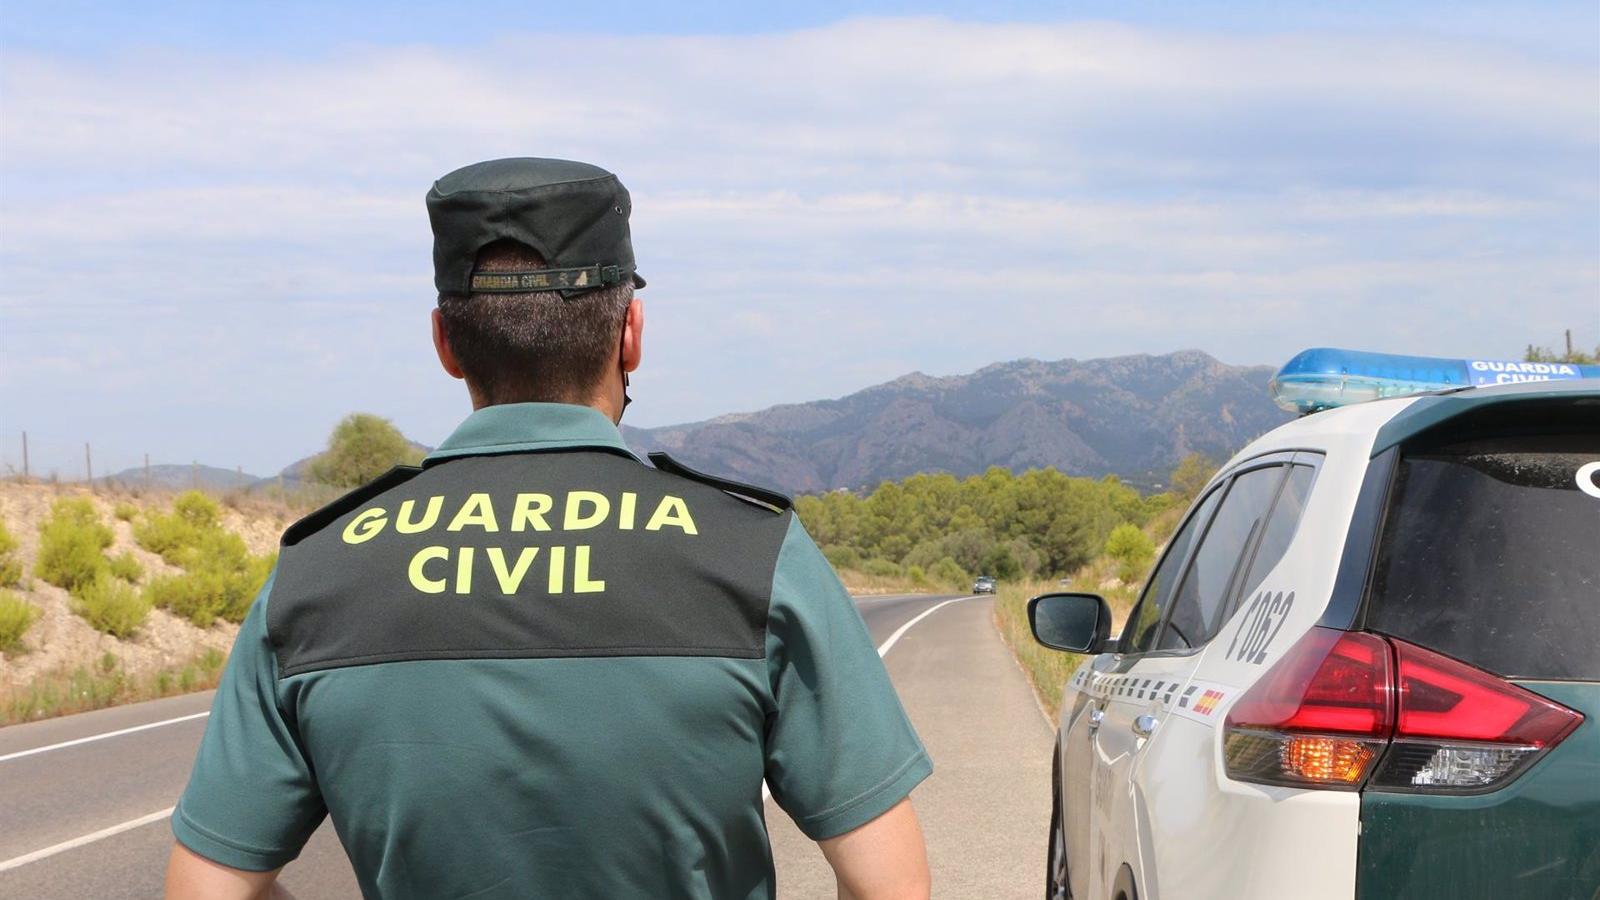 500 guardias civiles se desplegarán en nueve localidades cercanas a Madrid en un plan preventivo contra las bandas juveniles